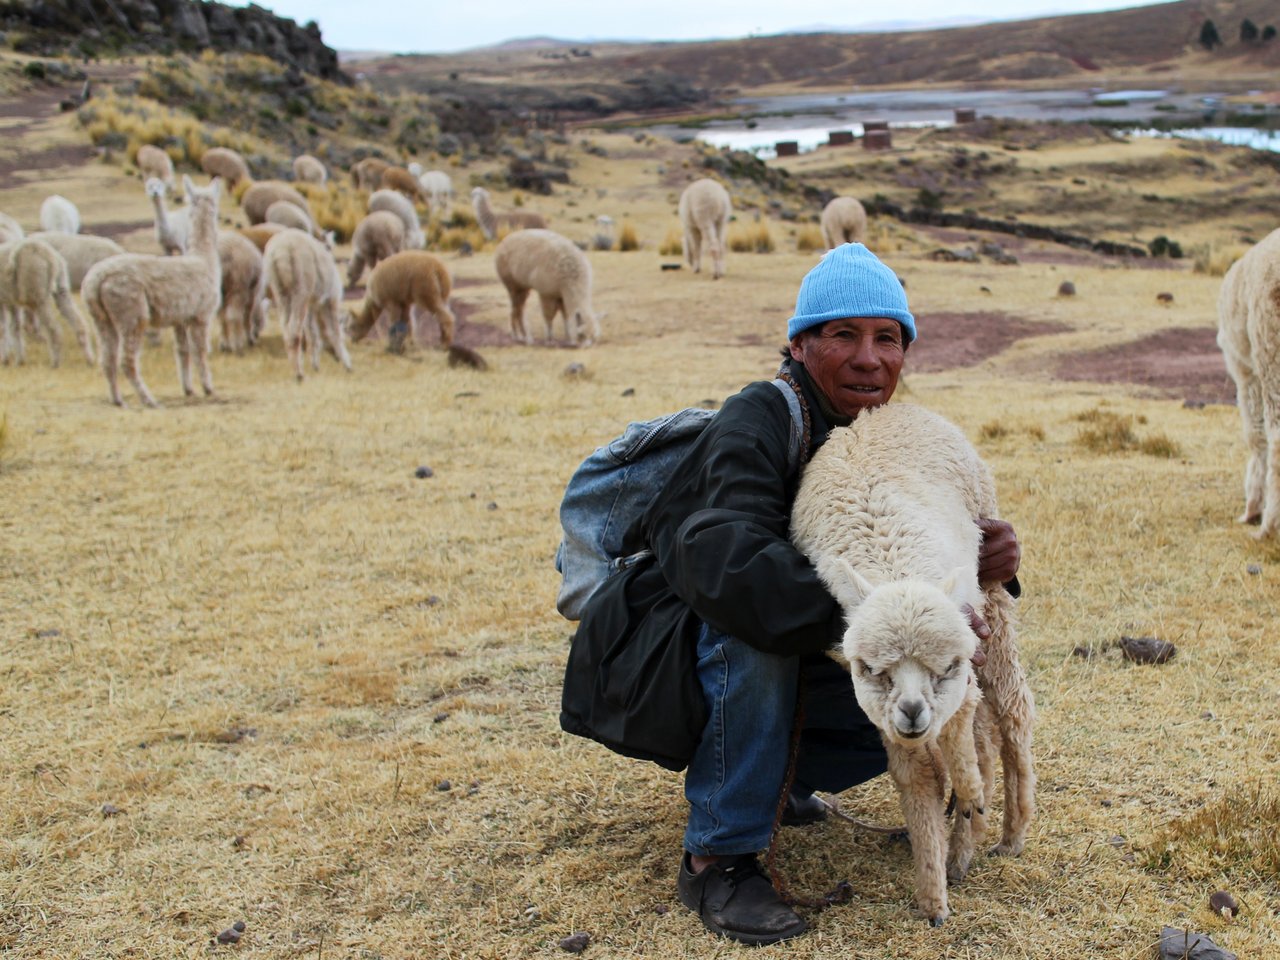 lago titicaca fai da te: un pastore a sillustani